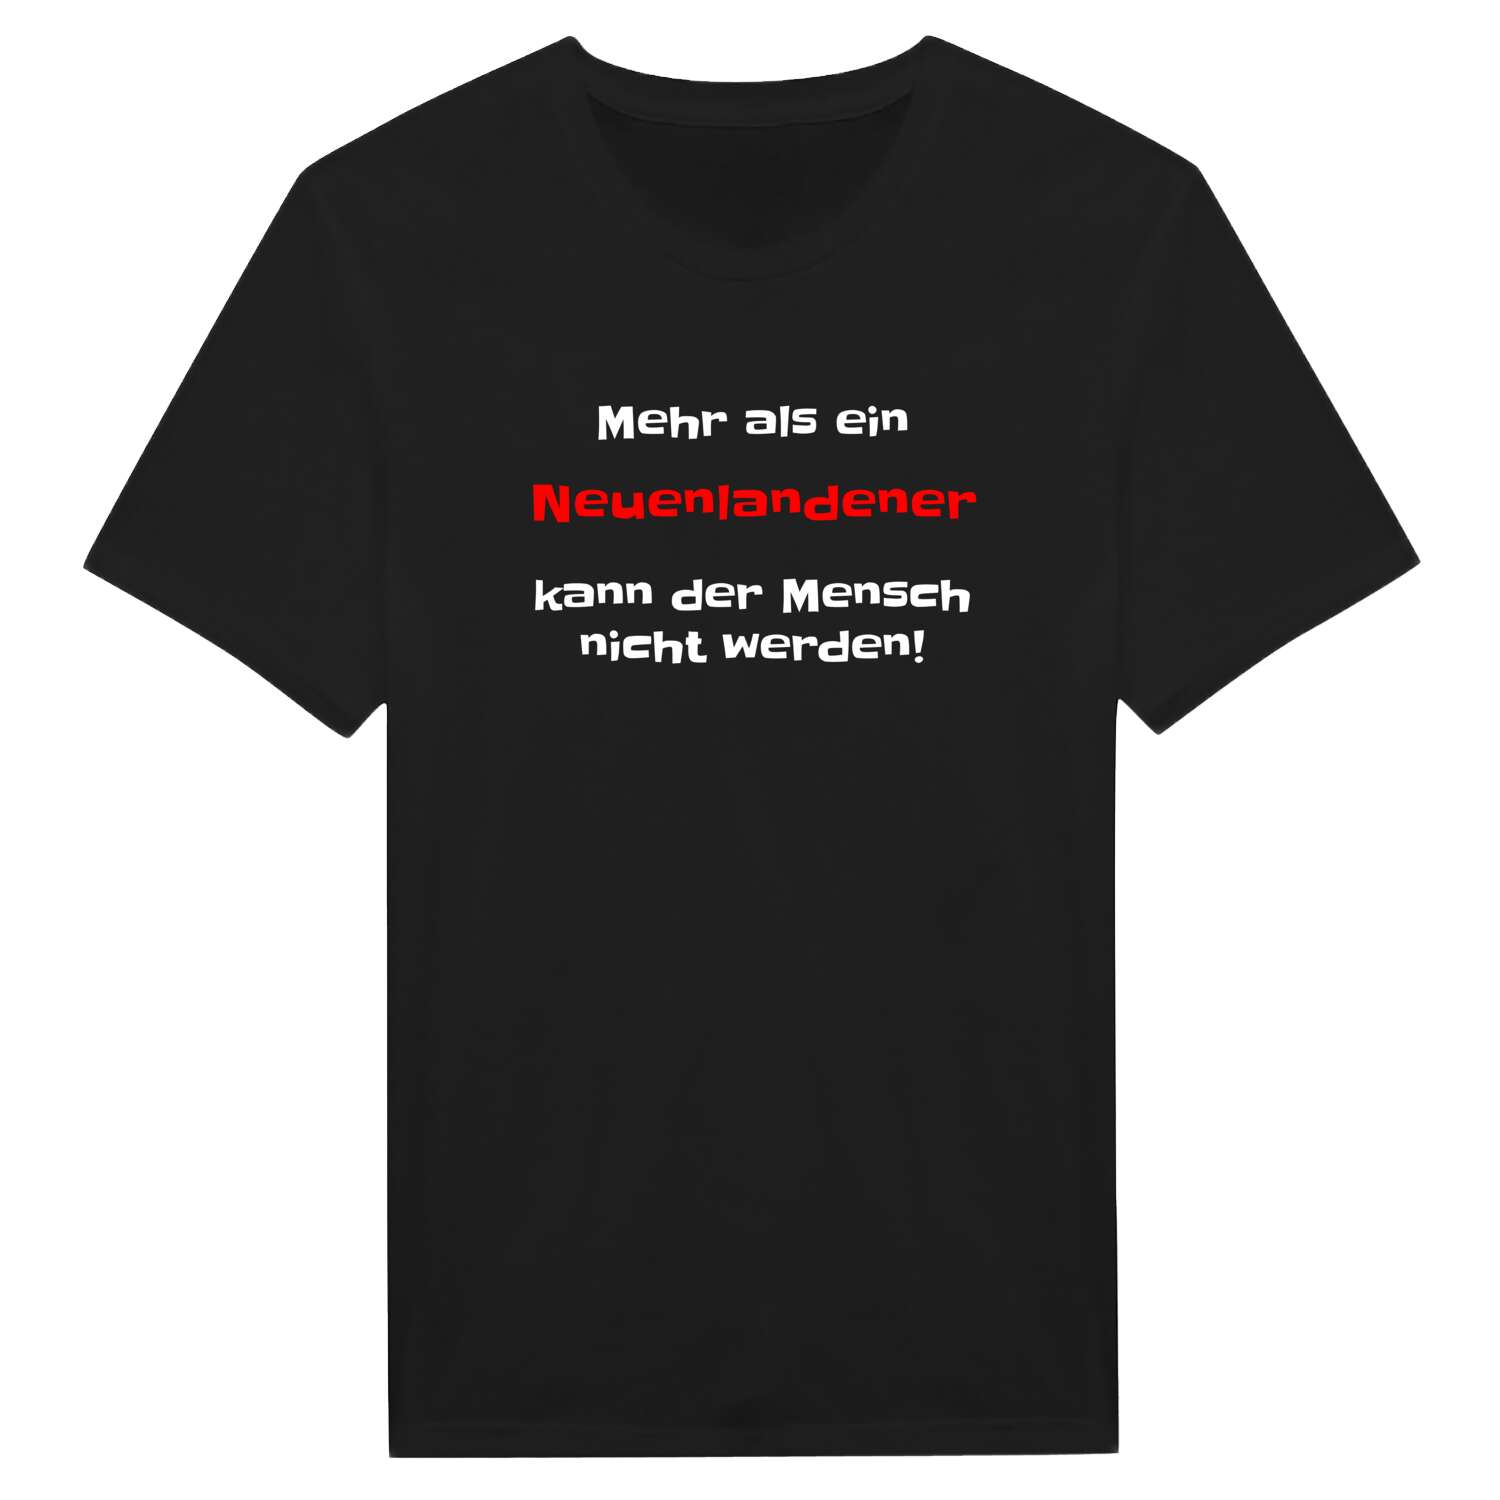 Neuenlande T-Shirt »Mehr als ein«